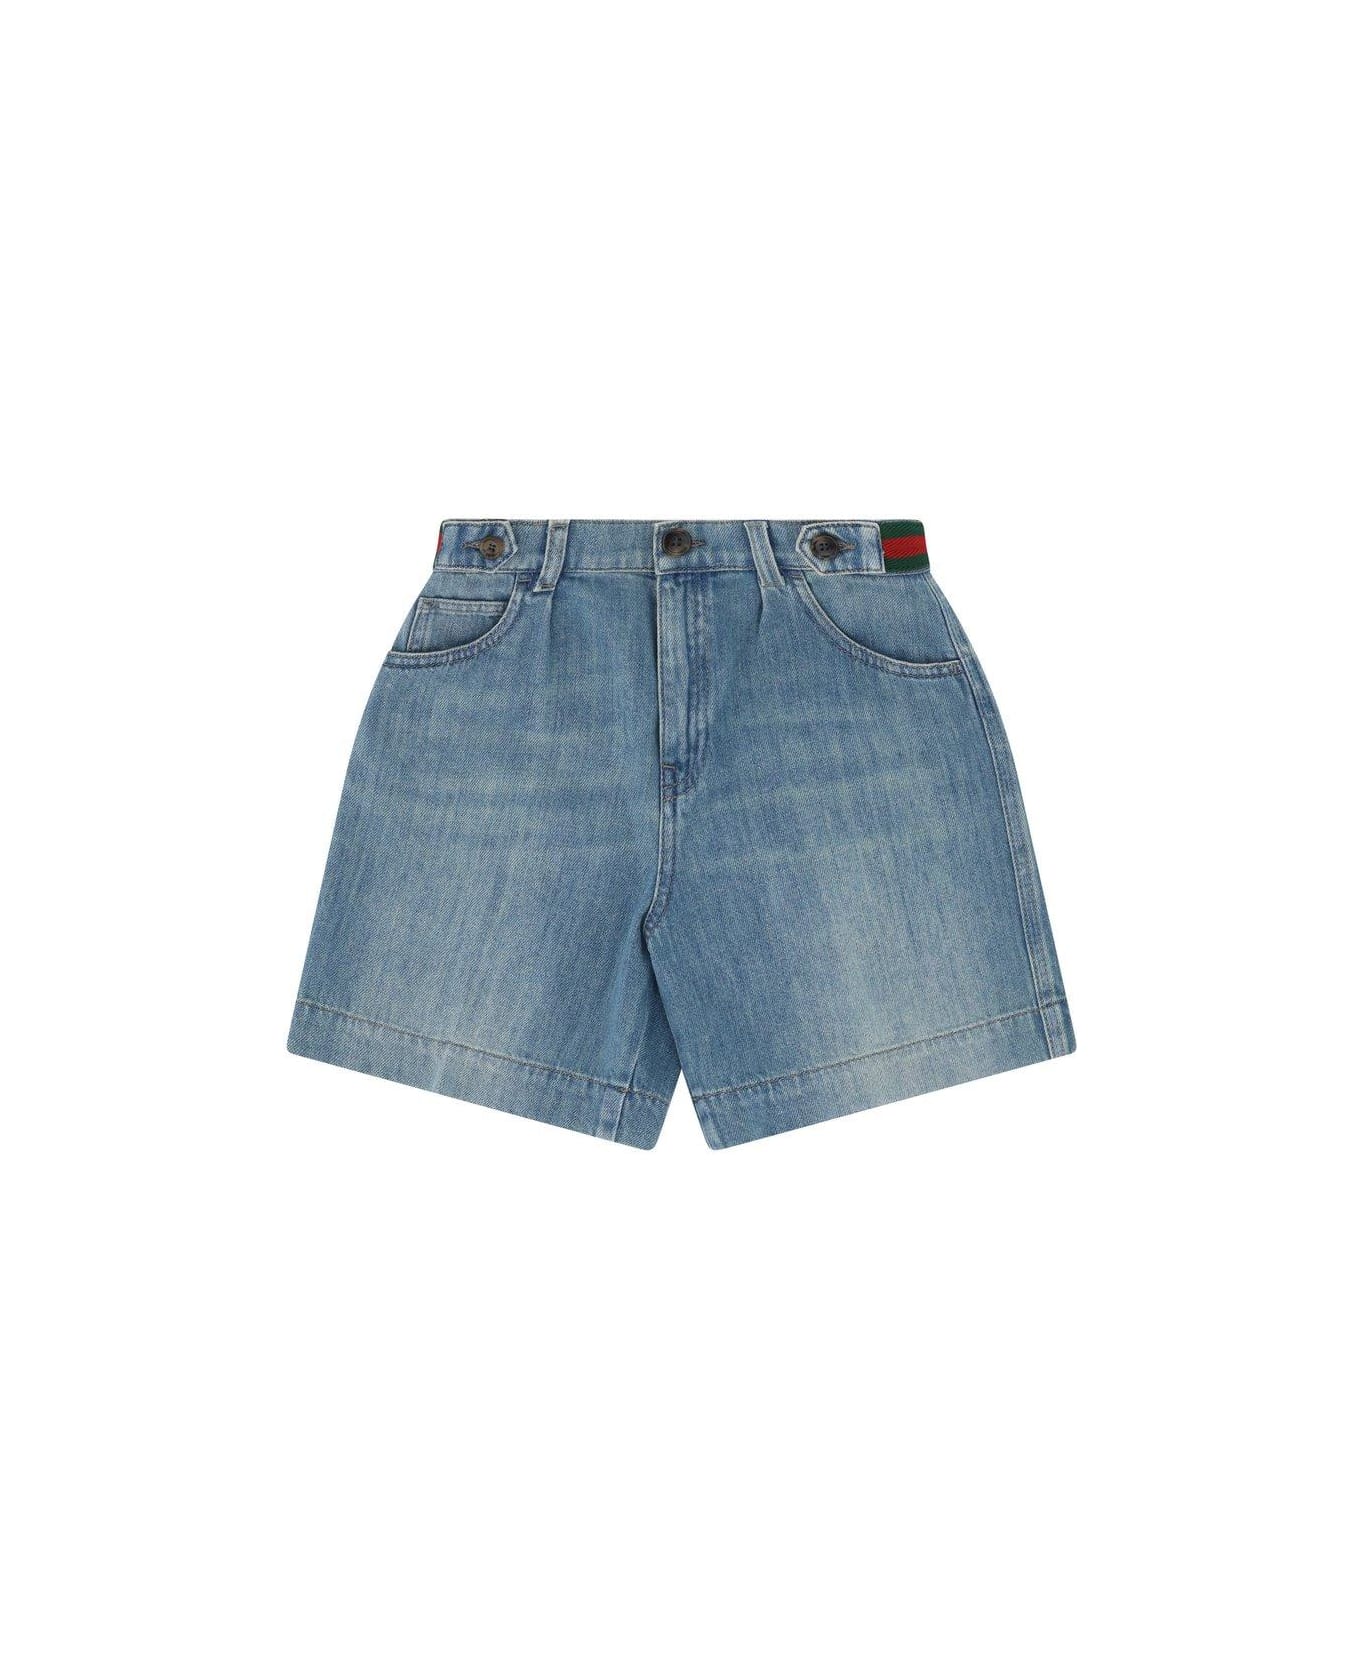 Gucci Denim Bermuda Shorts - Blue ボトムス